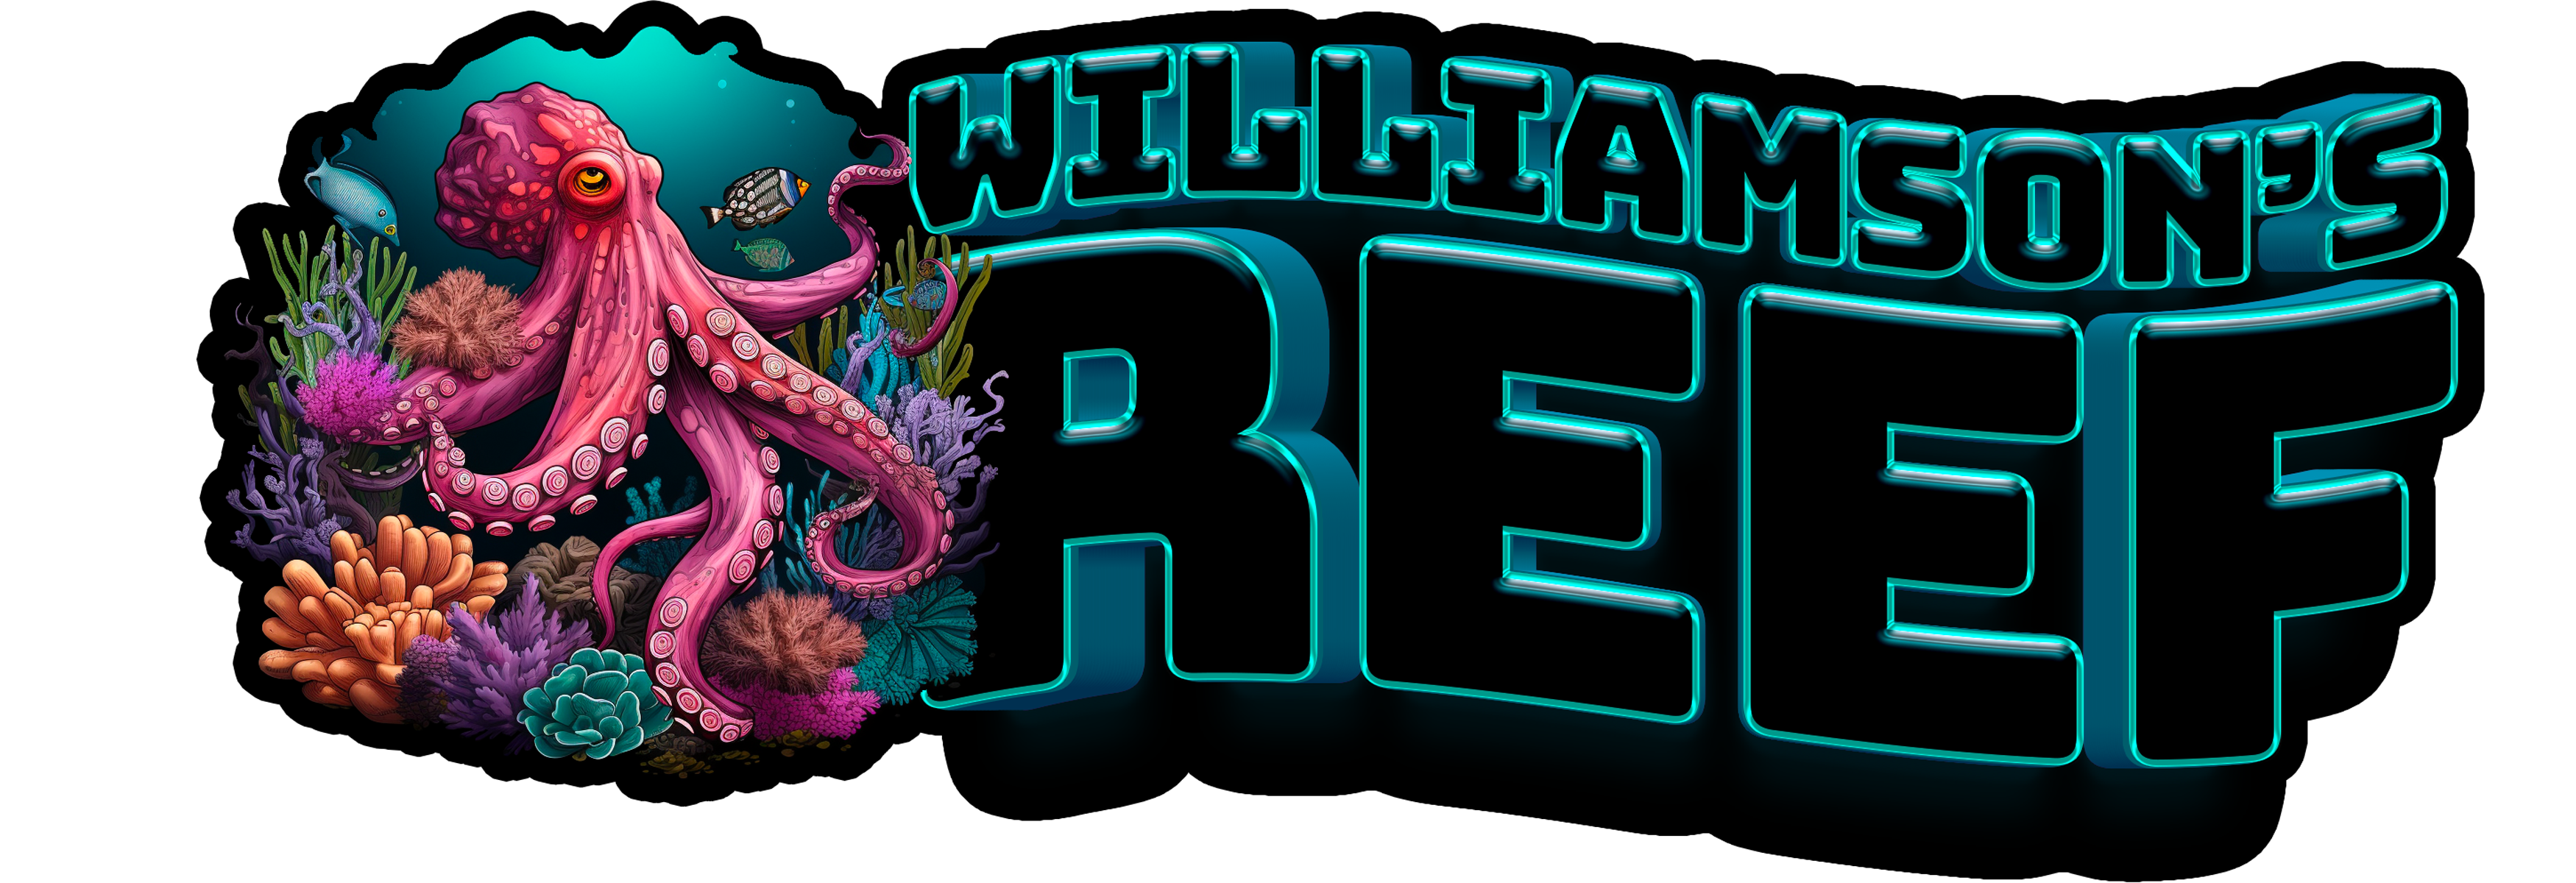 Williamson's Reef